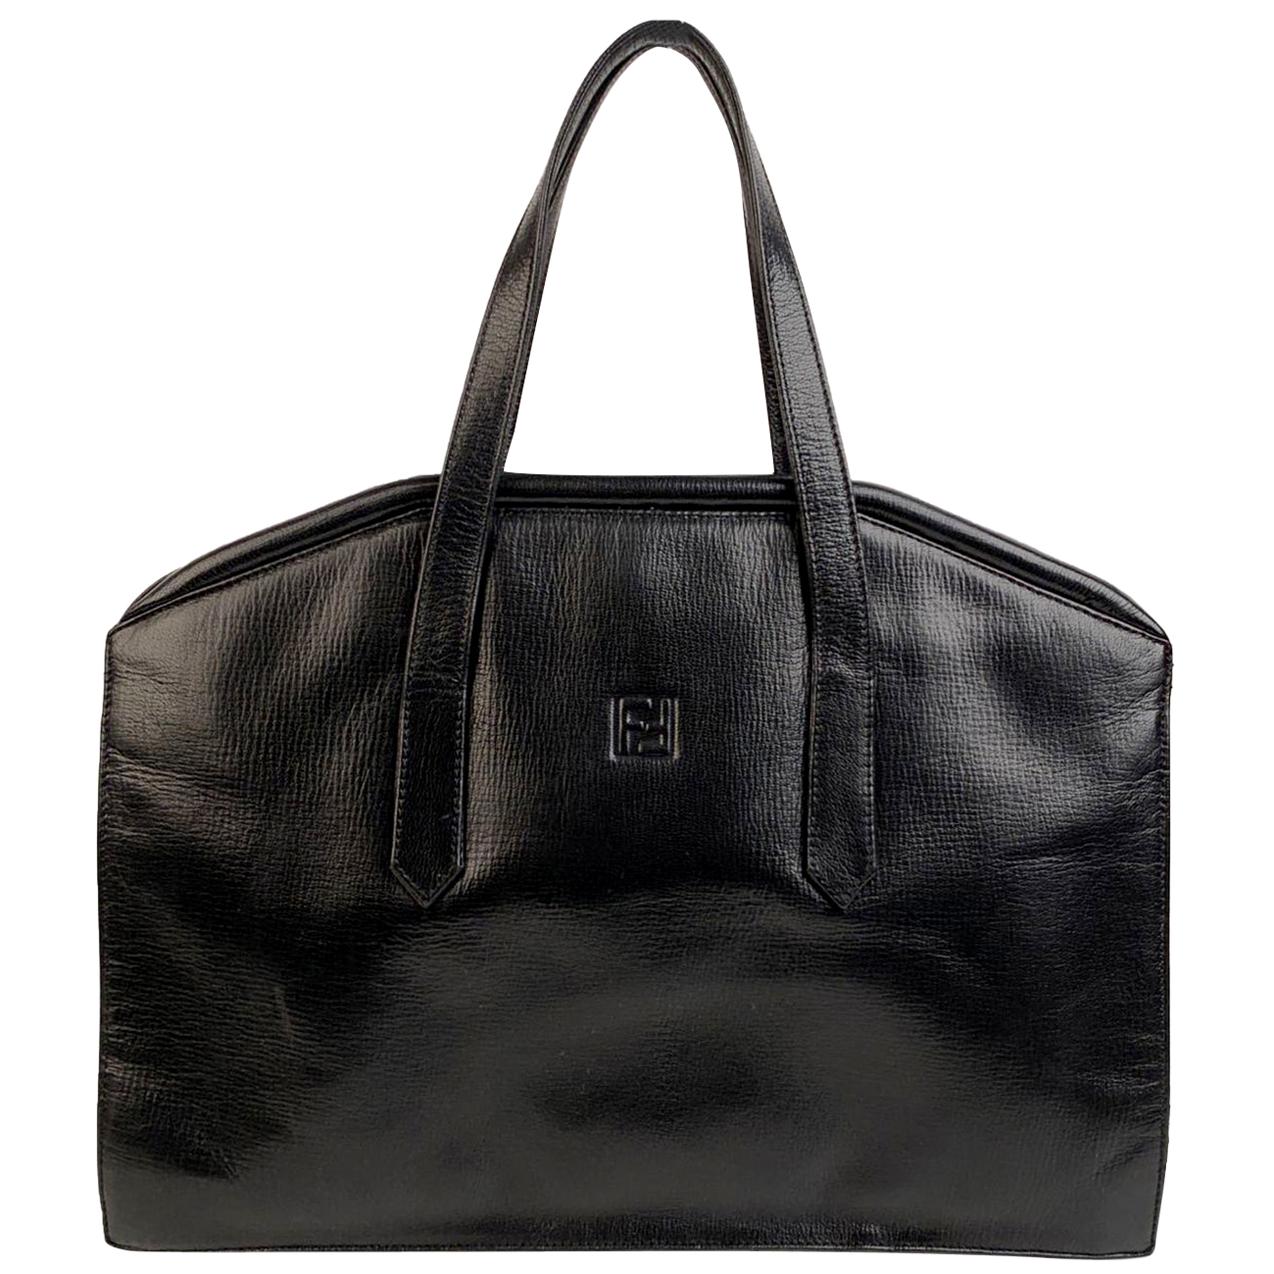 Fendi Vintage Black Leather Framed Satchel Top Handle Bag